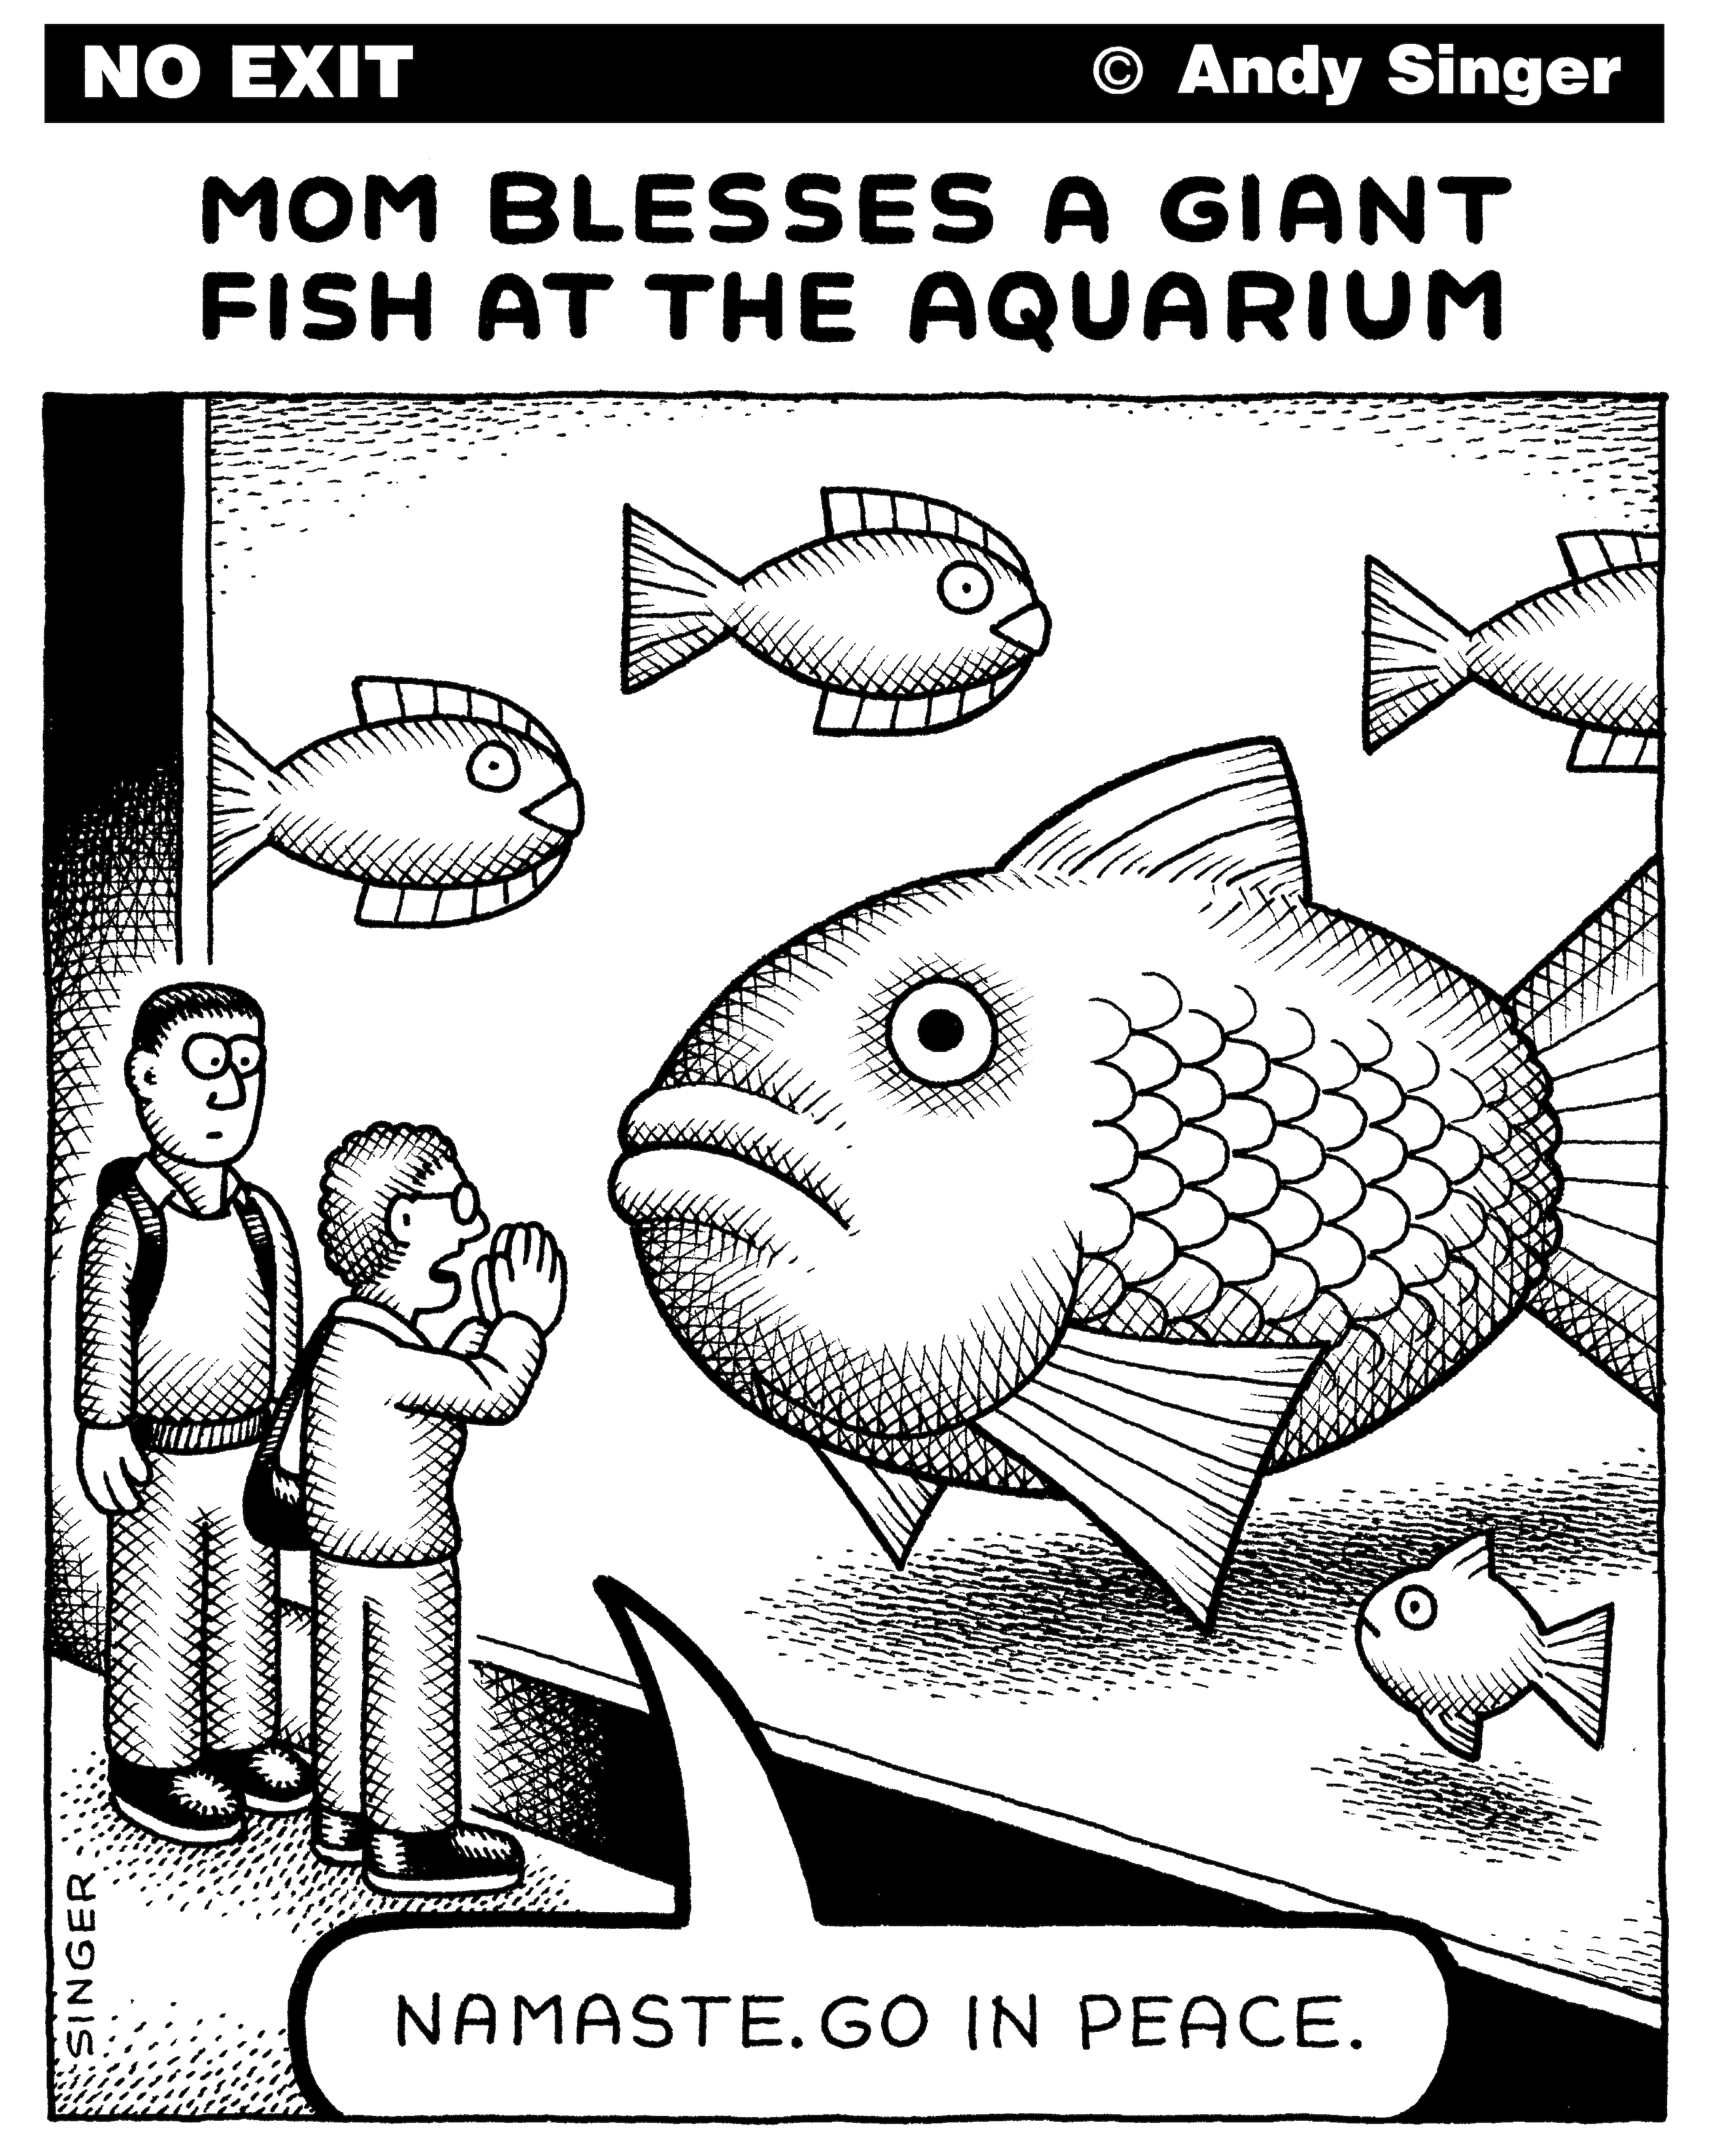 No Exit Cartoon: Mom Blesses a Giant Fish at the Aquarium